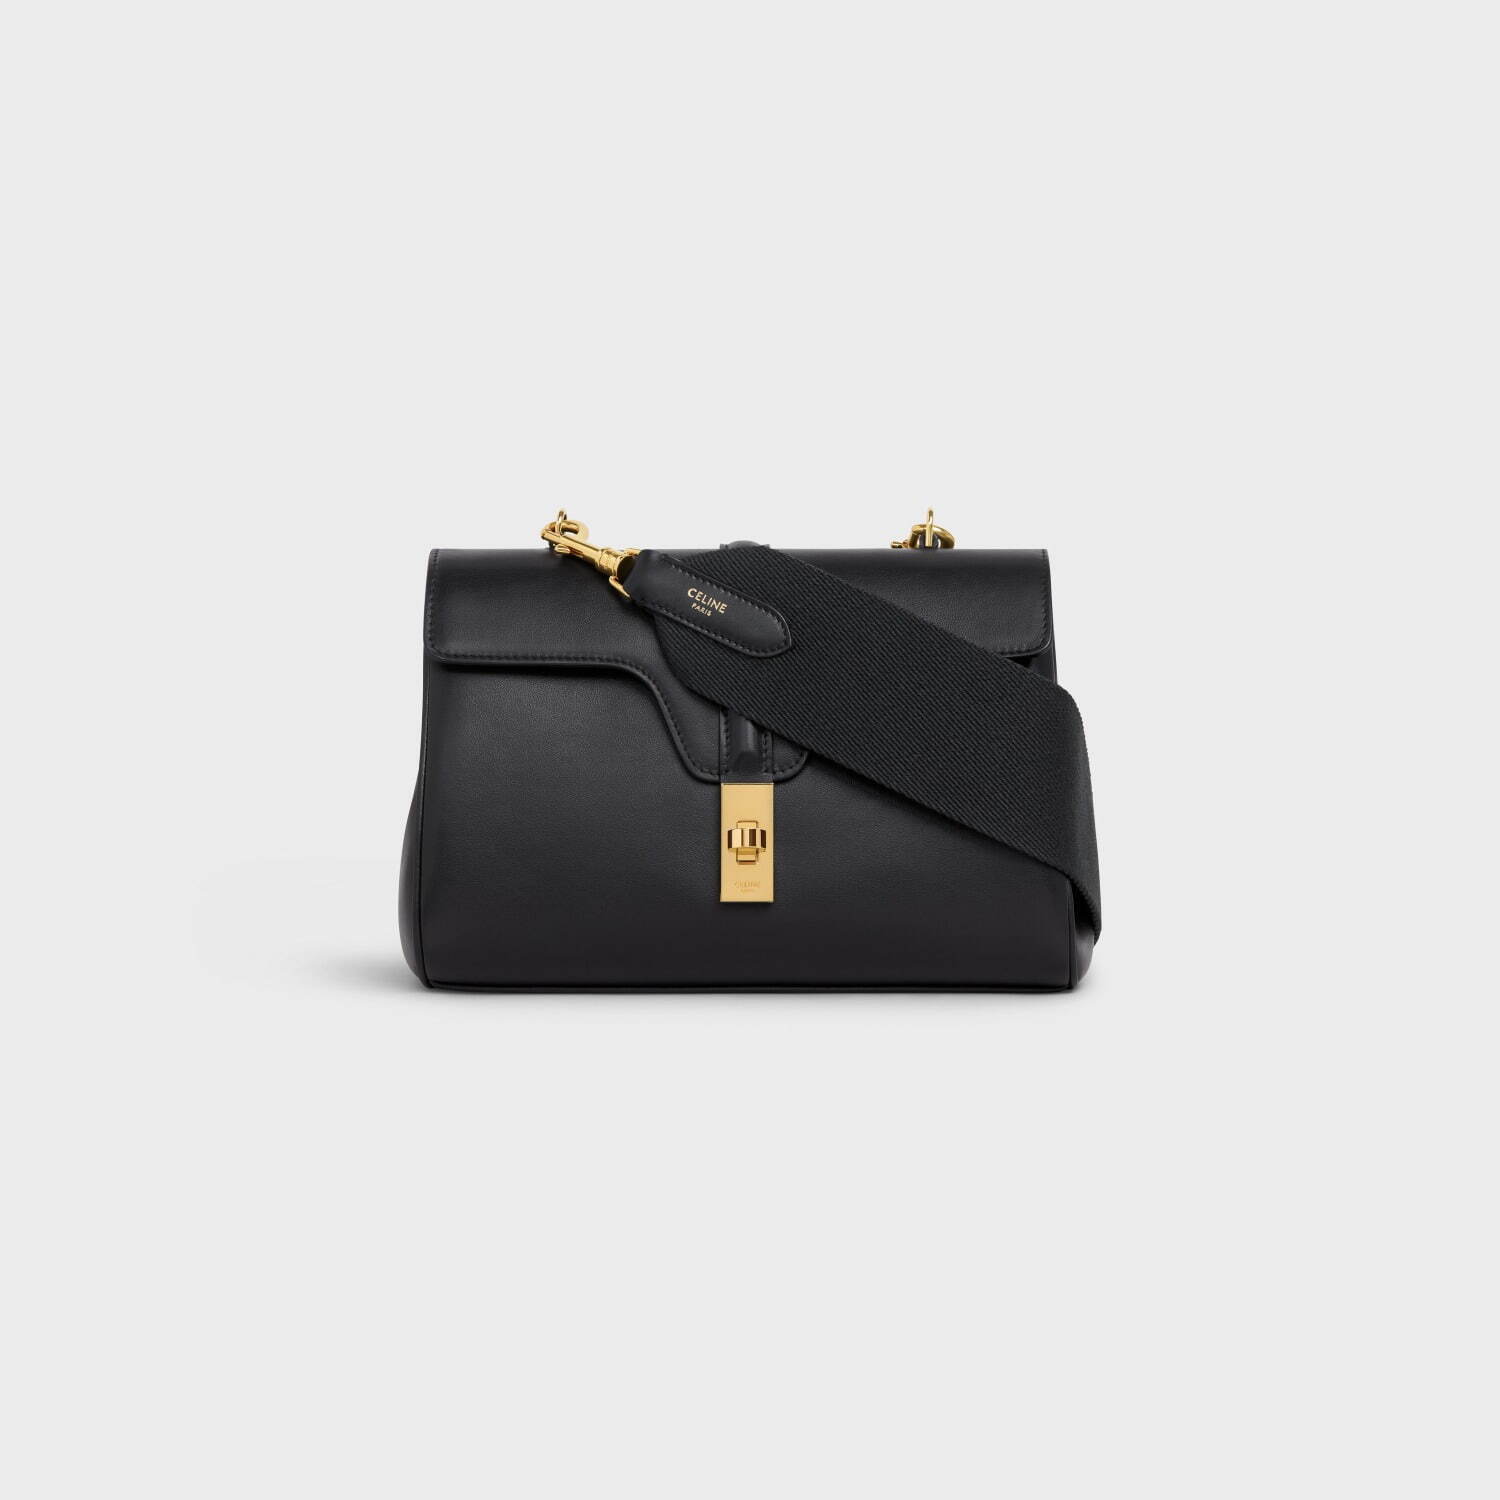 セリーヌの新作バッグ「16 ソフト ティーン」柔らかなレザーを採用